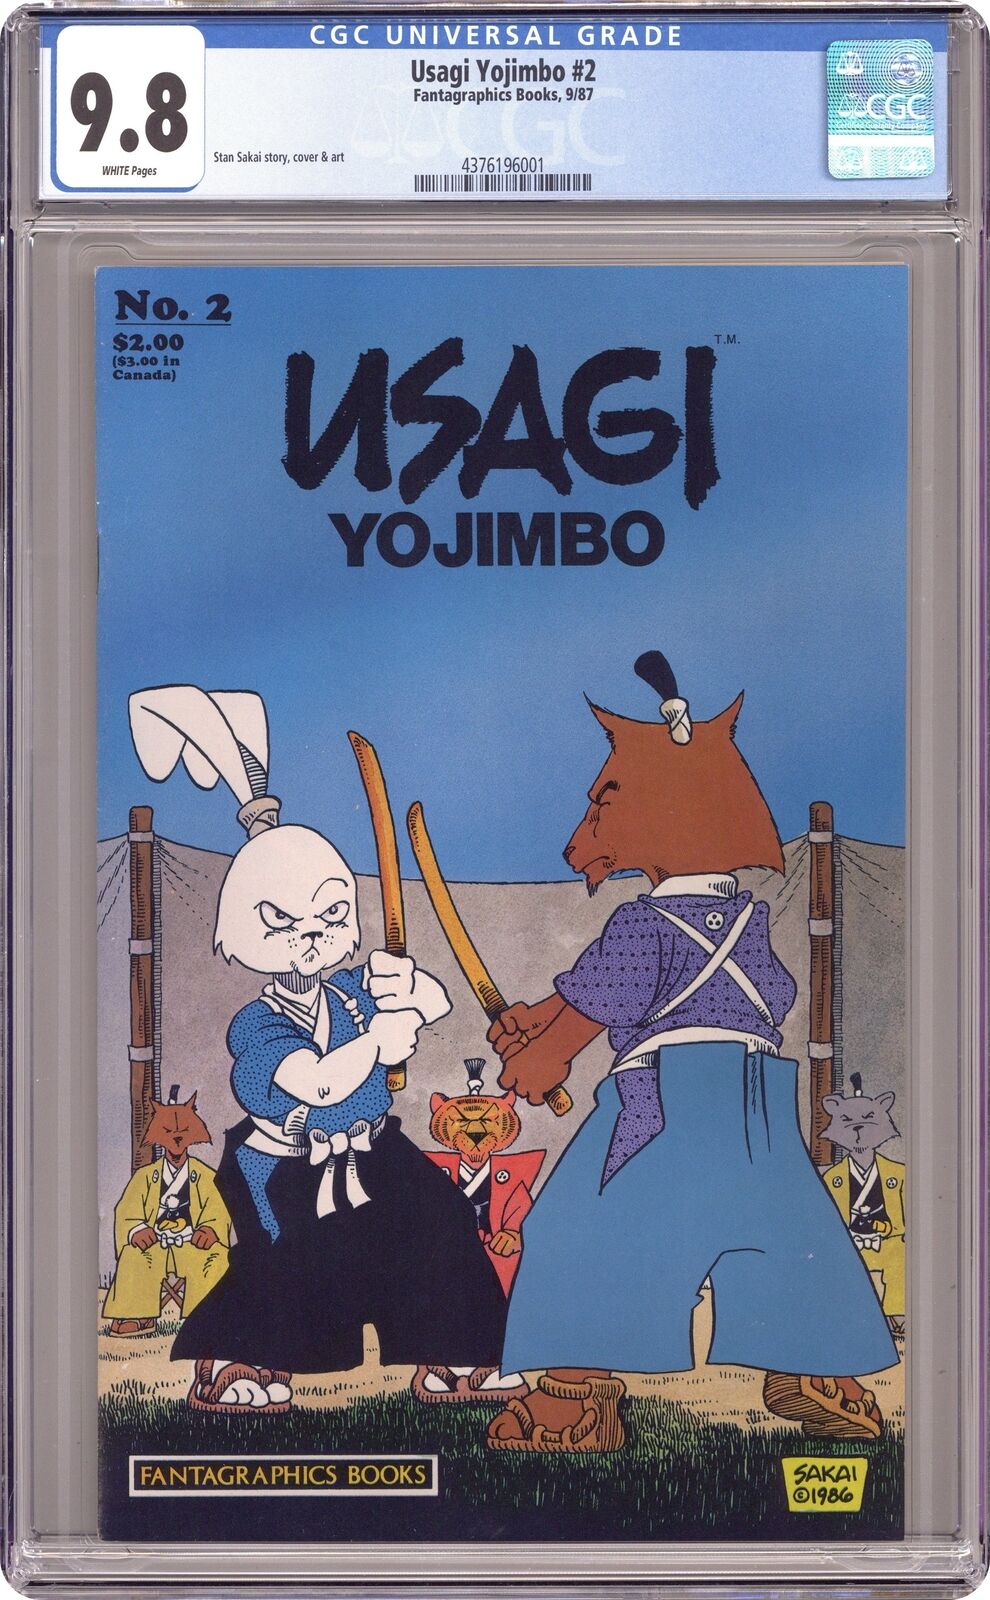 Usagi Yojimbo #2 CGC 9.8 1987 4376196001